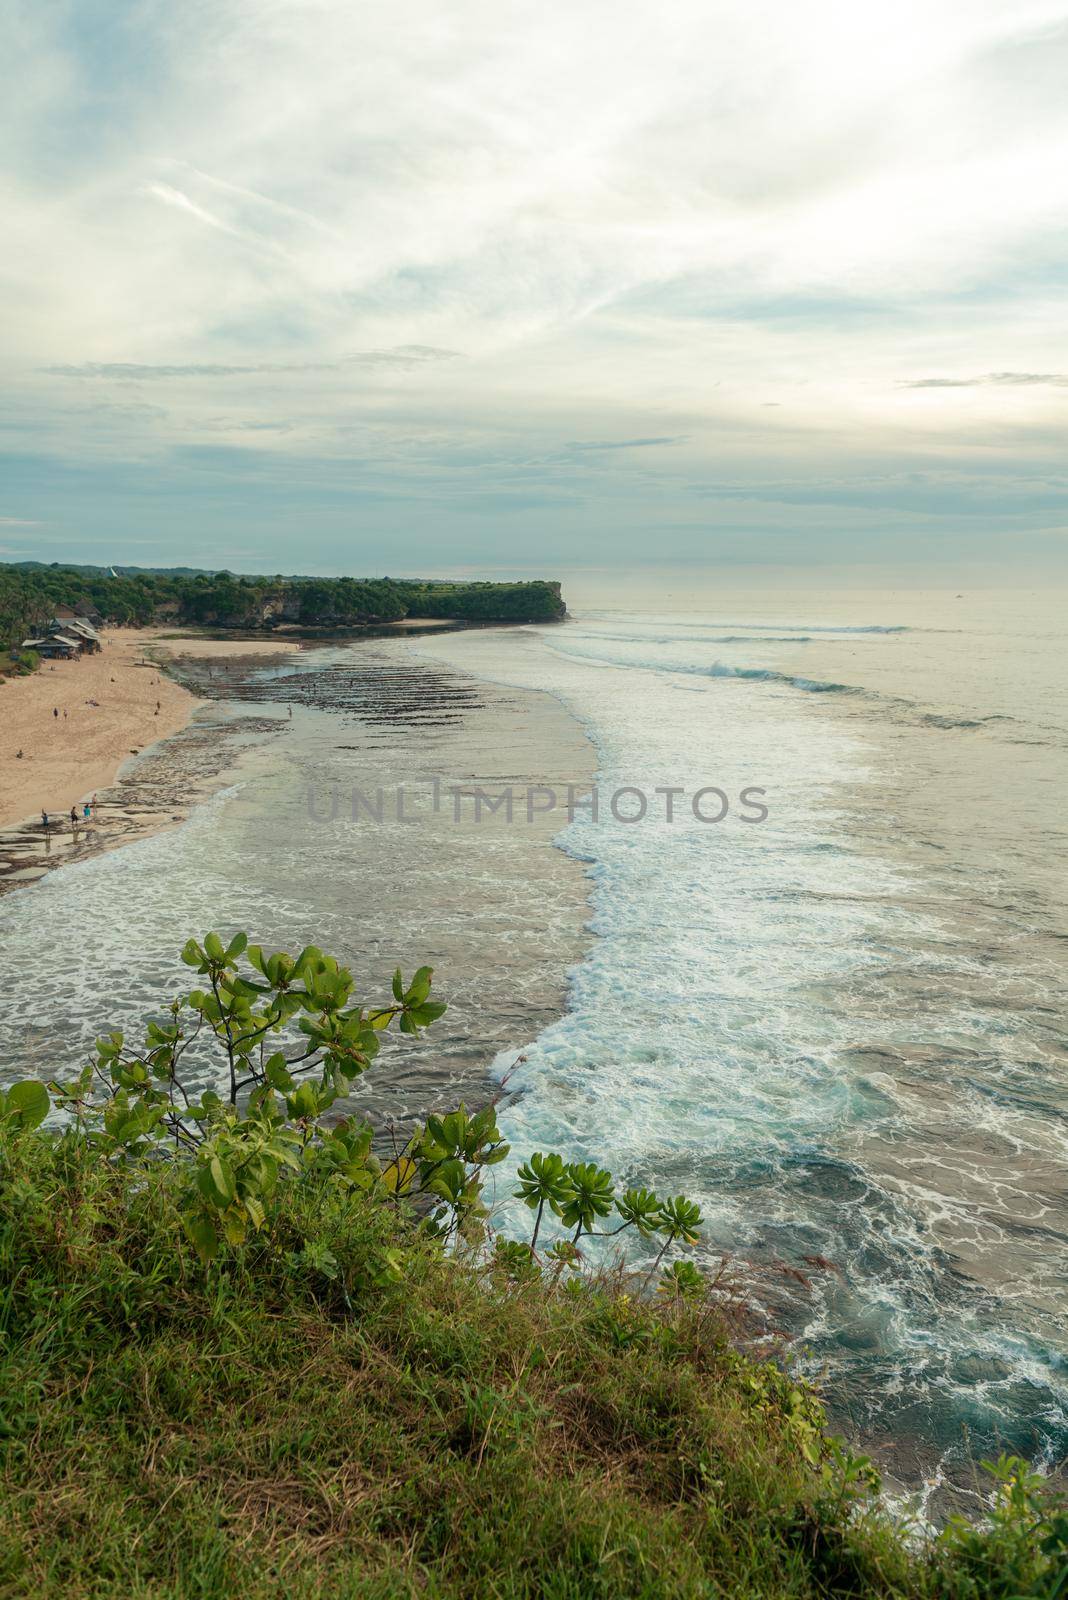 Ocean coast at Bali by nikitabuida